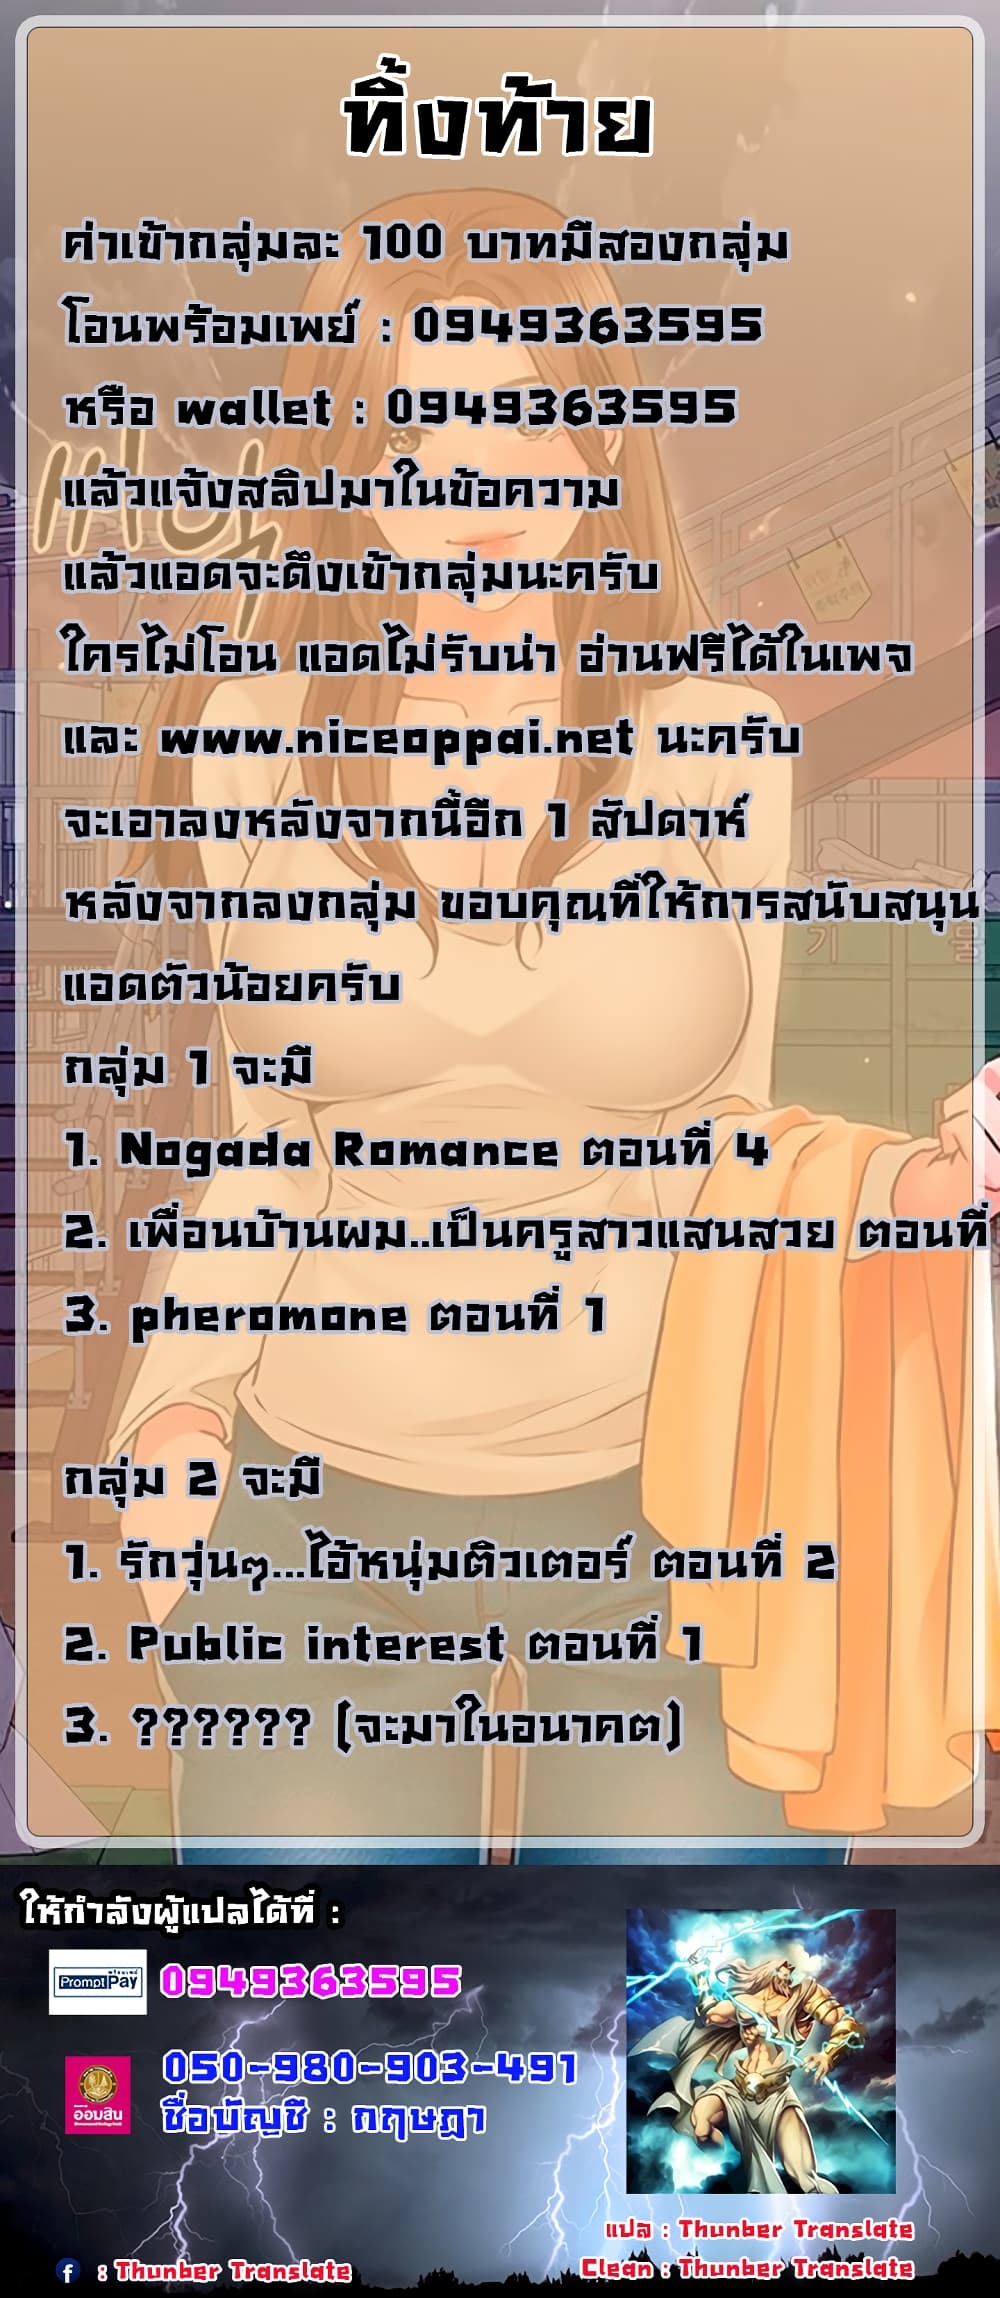 Nogada Romance5 (12)